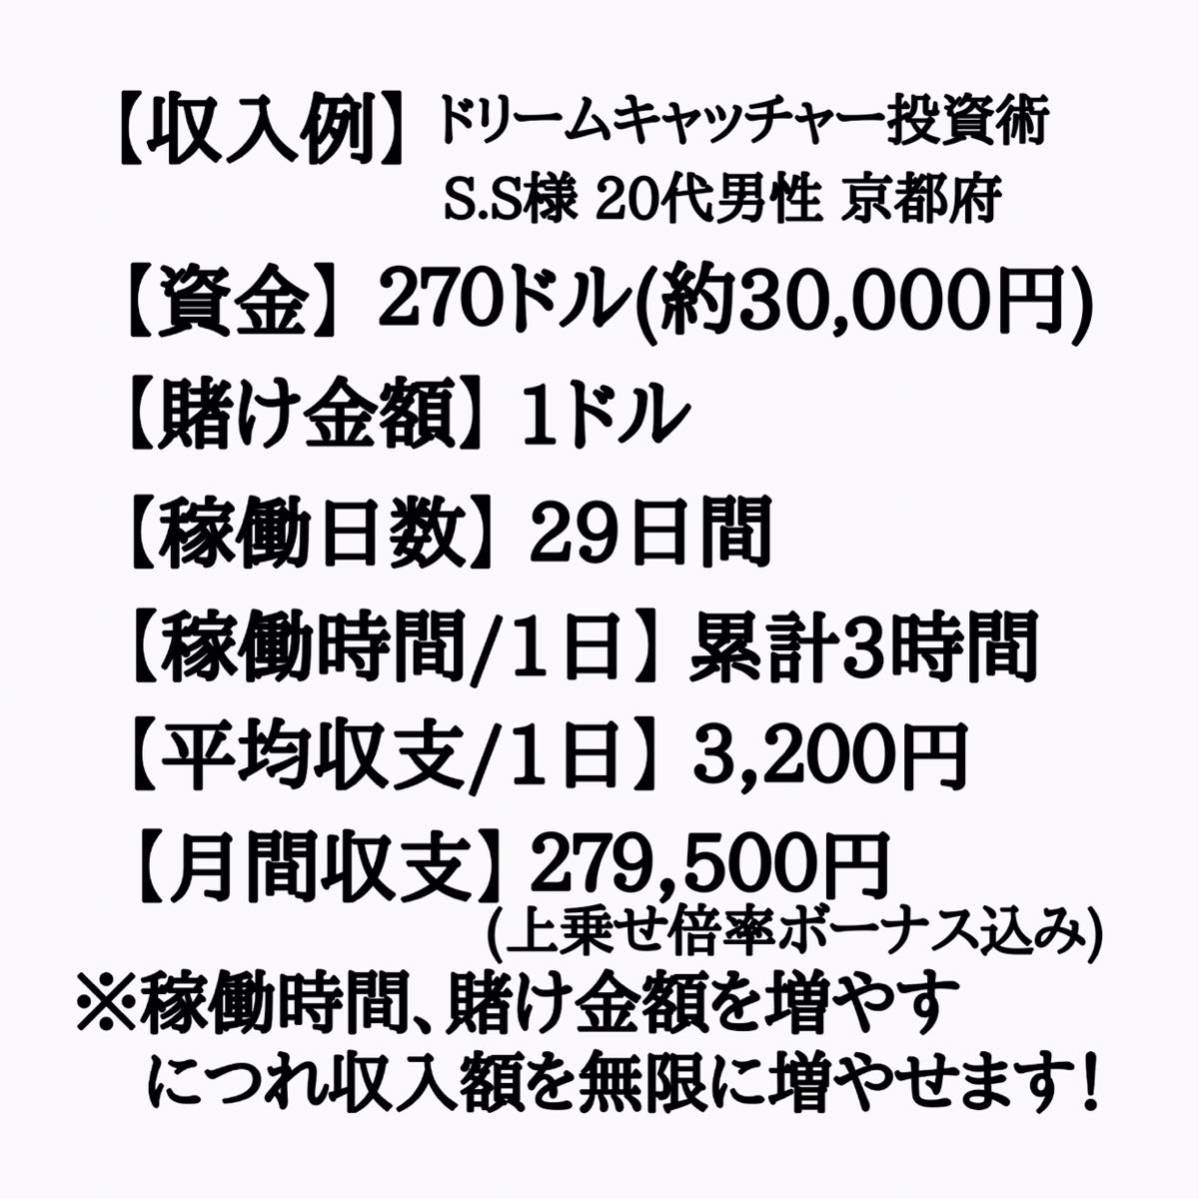 { прибывший первым 15 имя ограничение } обычная цена Y90,000 иен = специальная цена Y9,800 иен совершенно оригинал высшее . инвестирование .3 позиций комплект стратегия временный . через .FX инвестирование 2